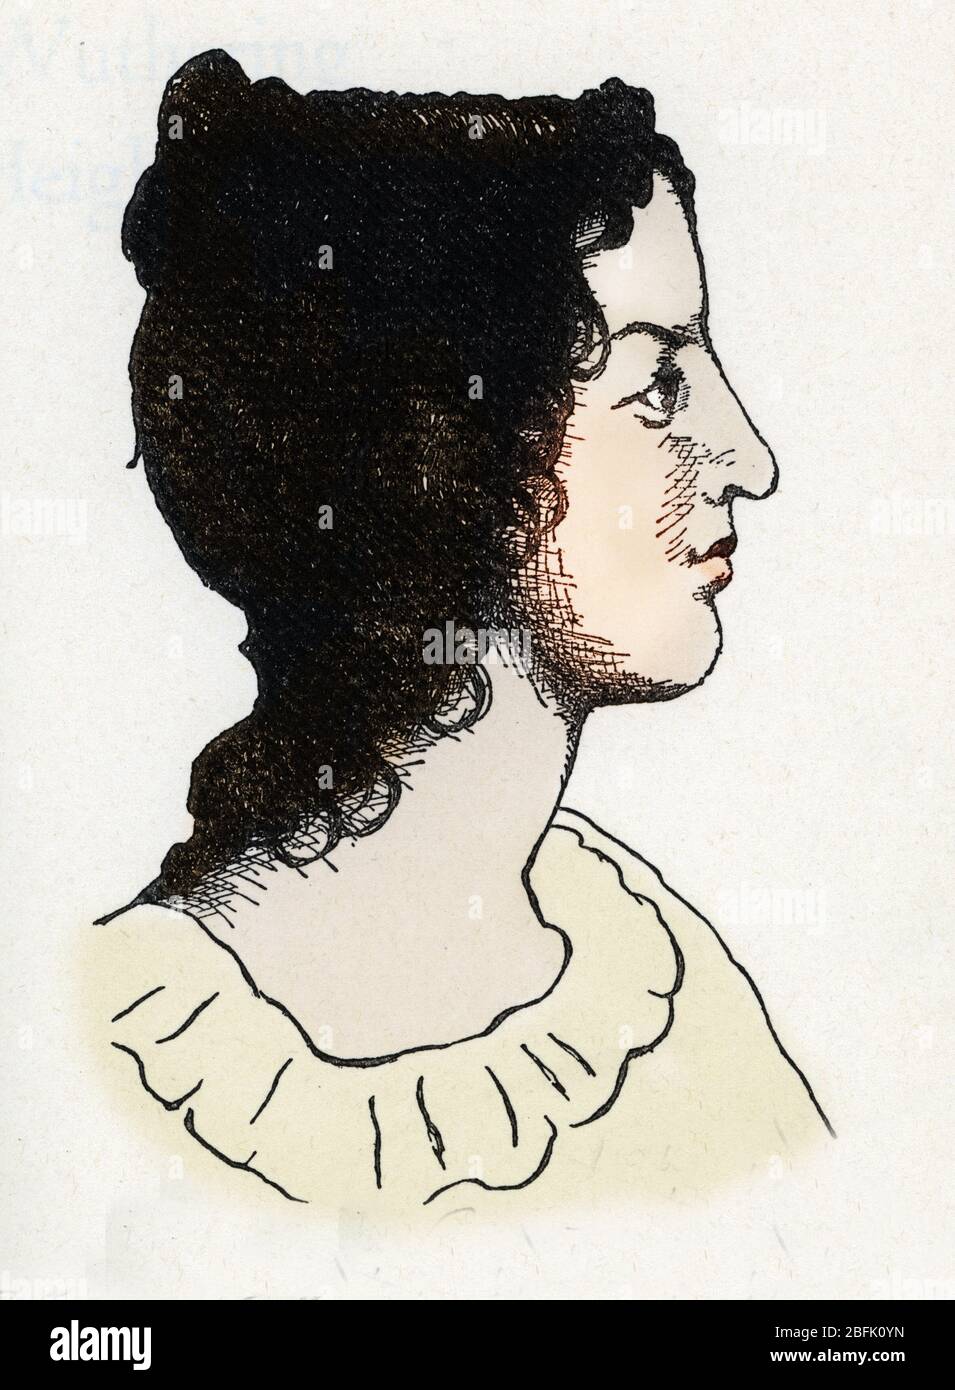 Portrait de l'ecrivain britannique Emily Bronte (1818-1848) (portrait of british writer Emily Bronte) Dessin anonyme tire de 'Les hauts de hurlevent' Stock Photo